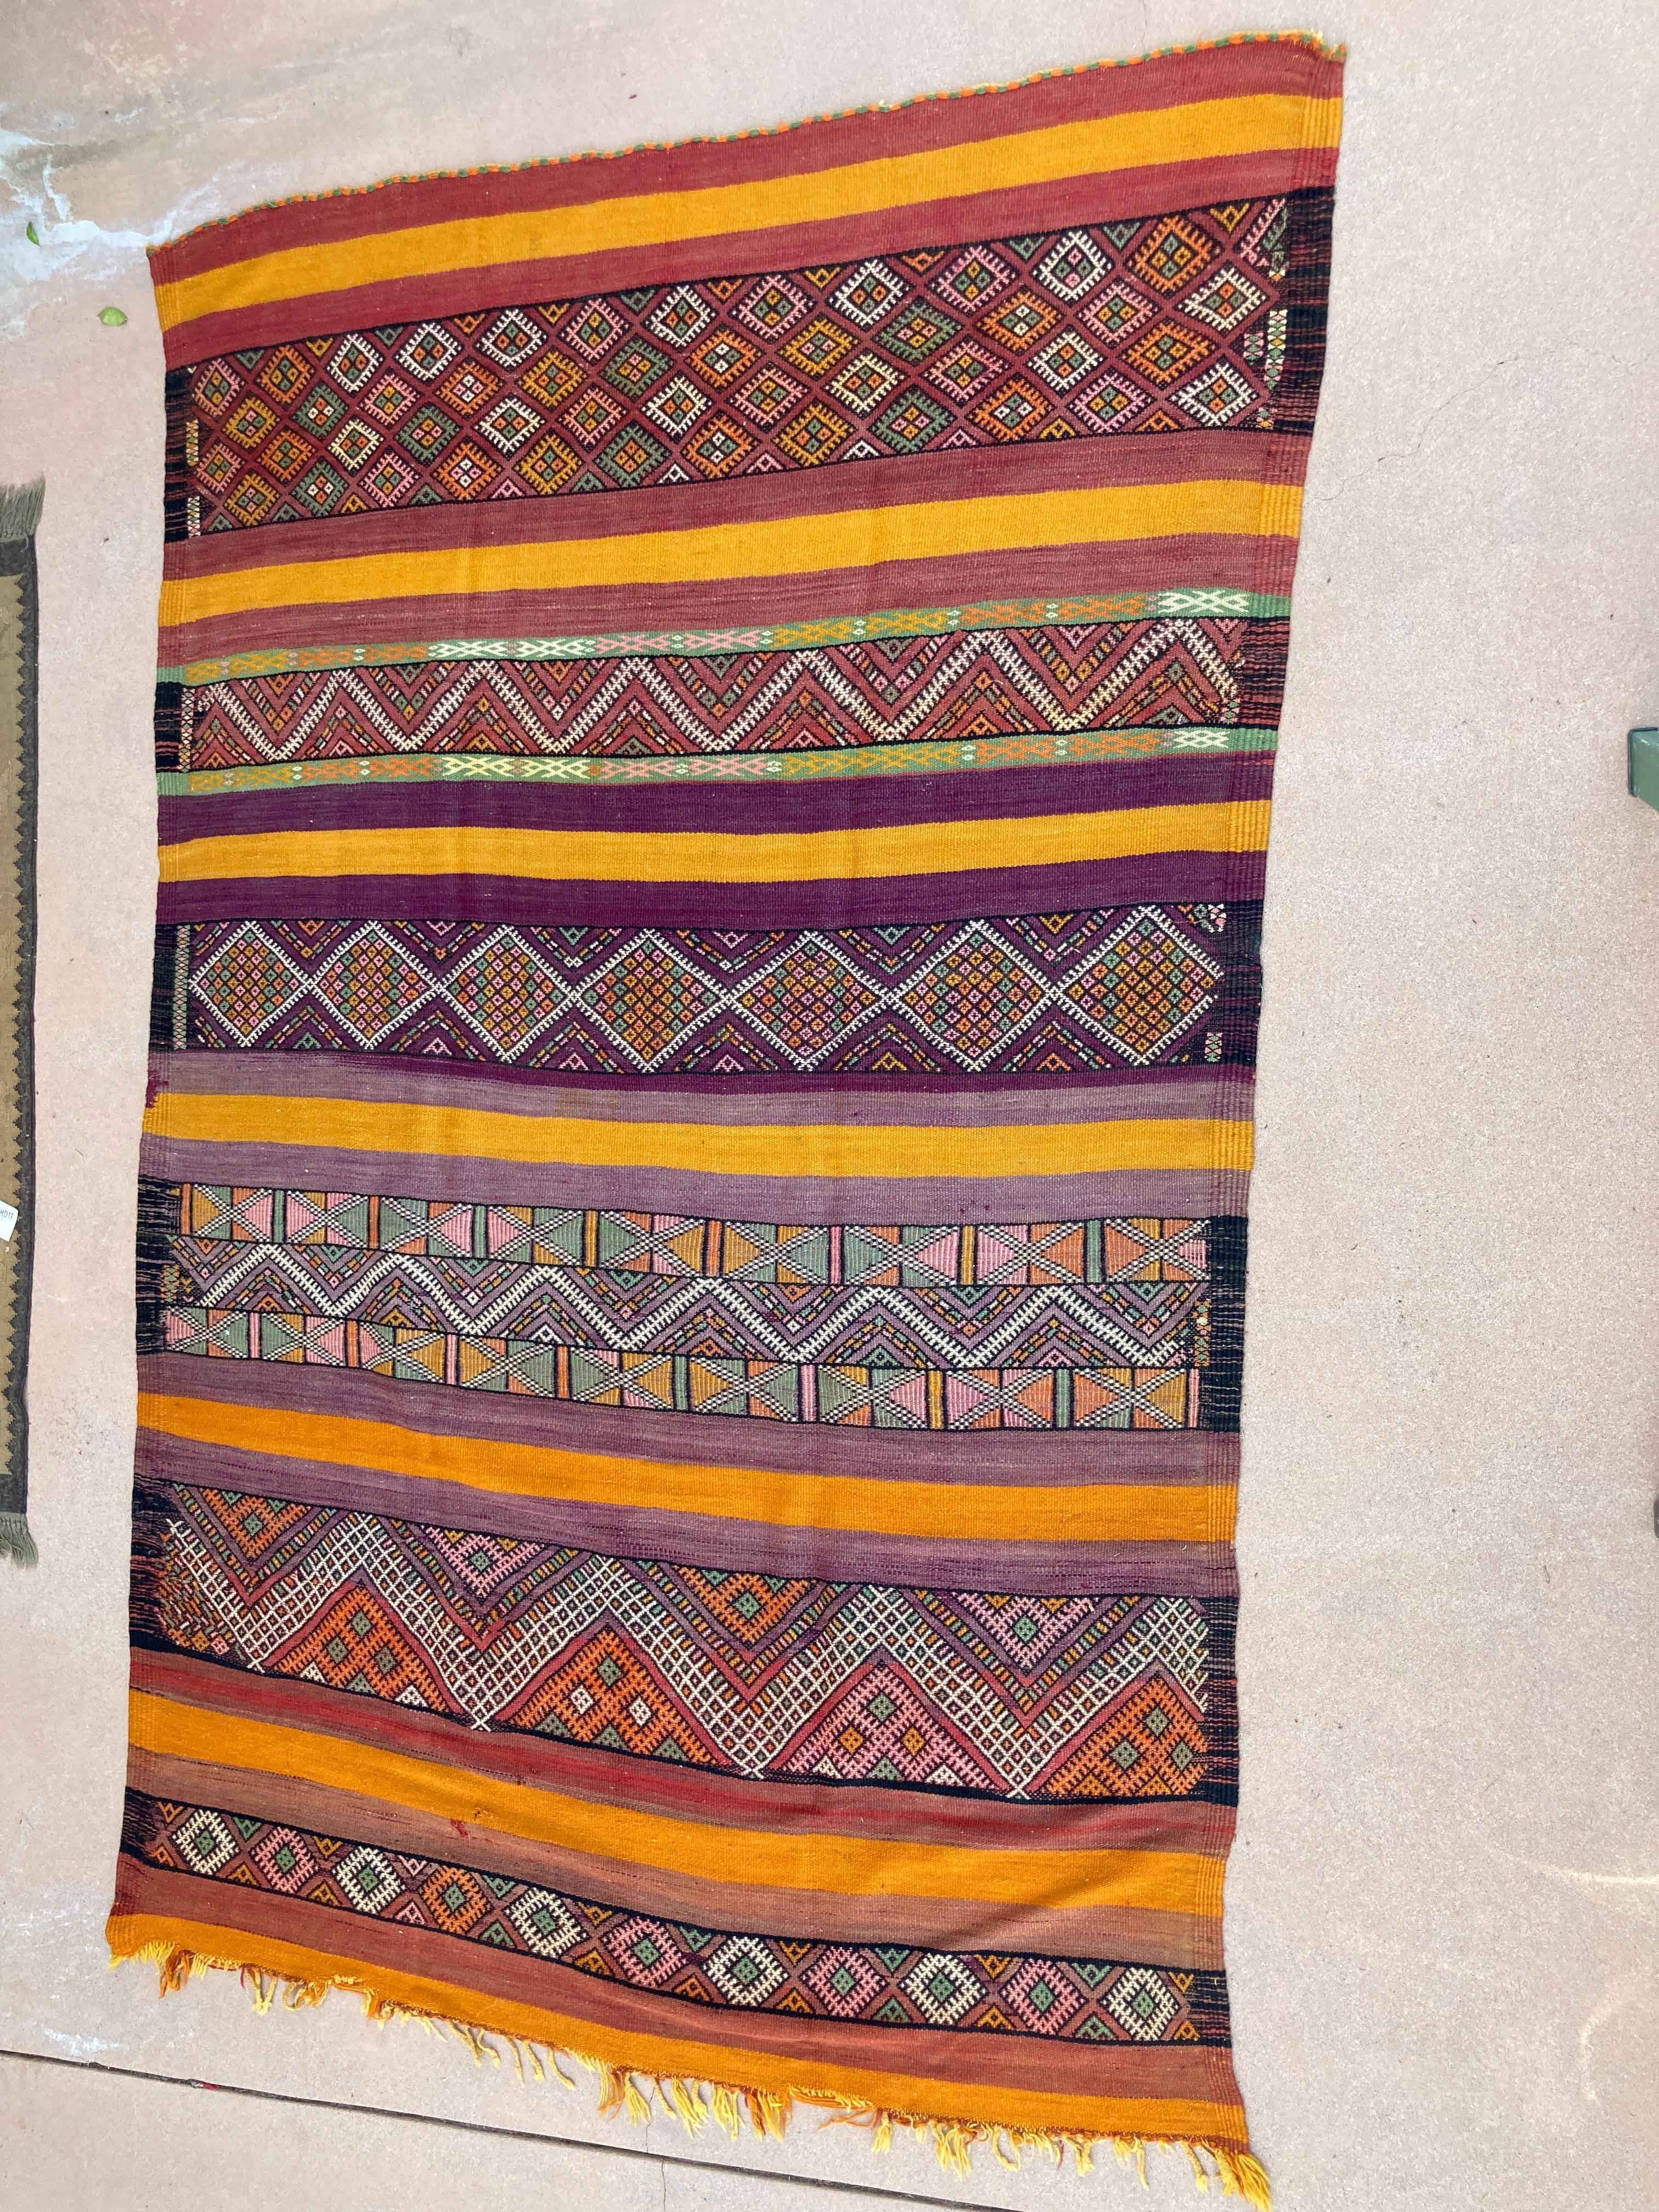 Vintage marokkanischen Kilim Berber Teppich, große Größe Vintage marokkanischen ethnischen Teppich, handgewebt von Berber Frauen in Marokko für ihre eigenen use.This Stammes-Teppich wurde mit Flachgewebe-Technik mit linearen Muster der abwechselnden